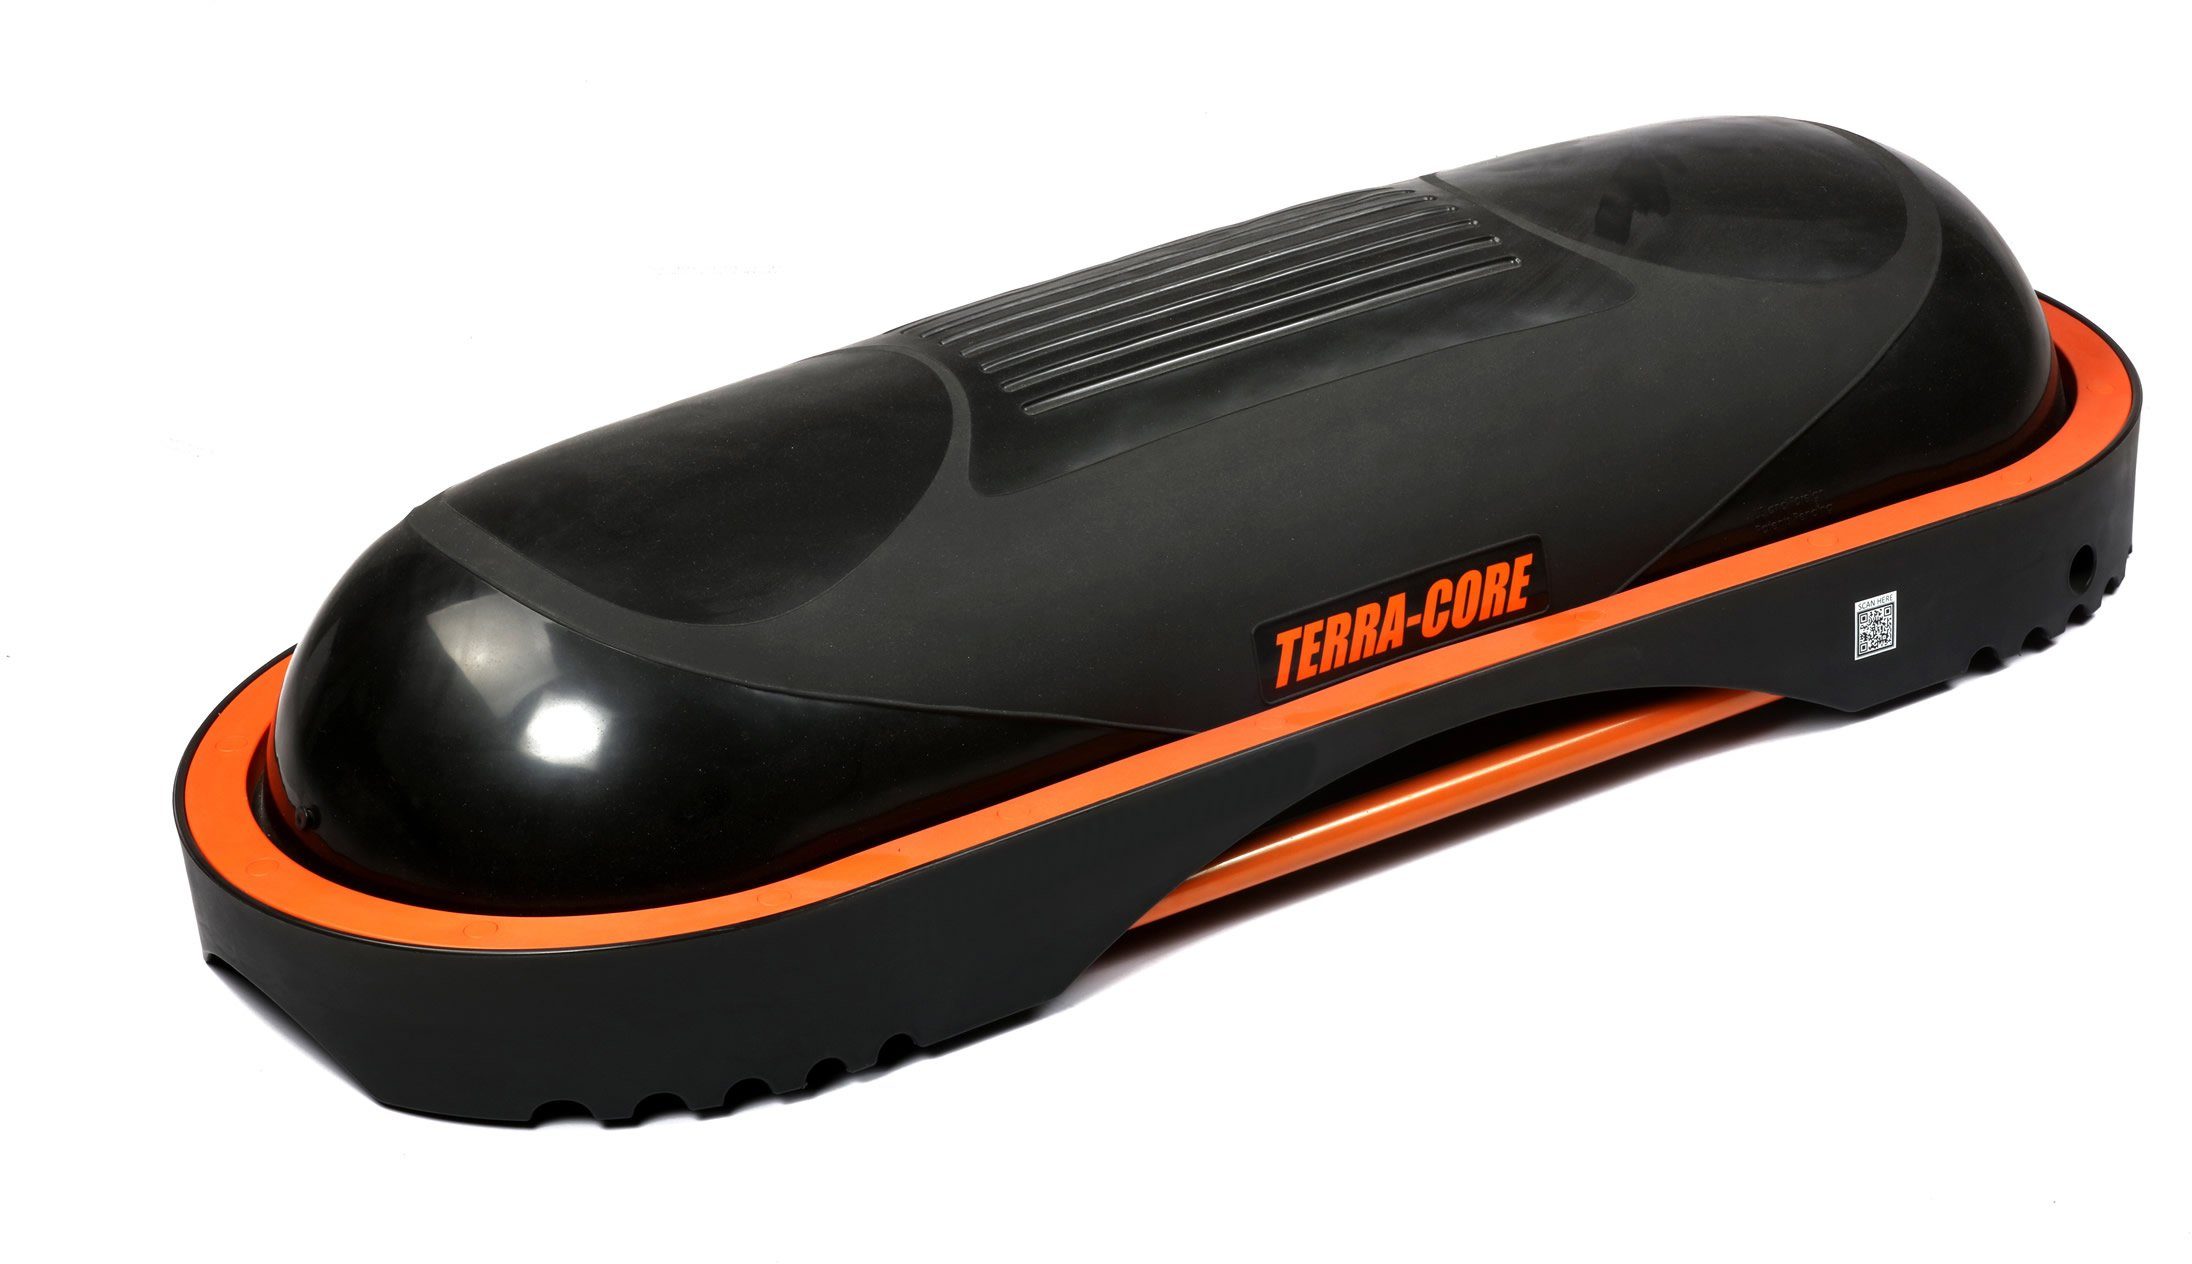 Terra Core Balancetrainer Terra Core, und Universelle Bench, Workout Board Stepp Balance